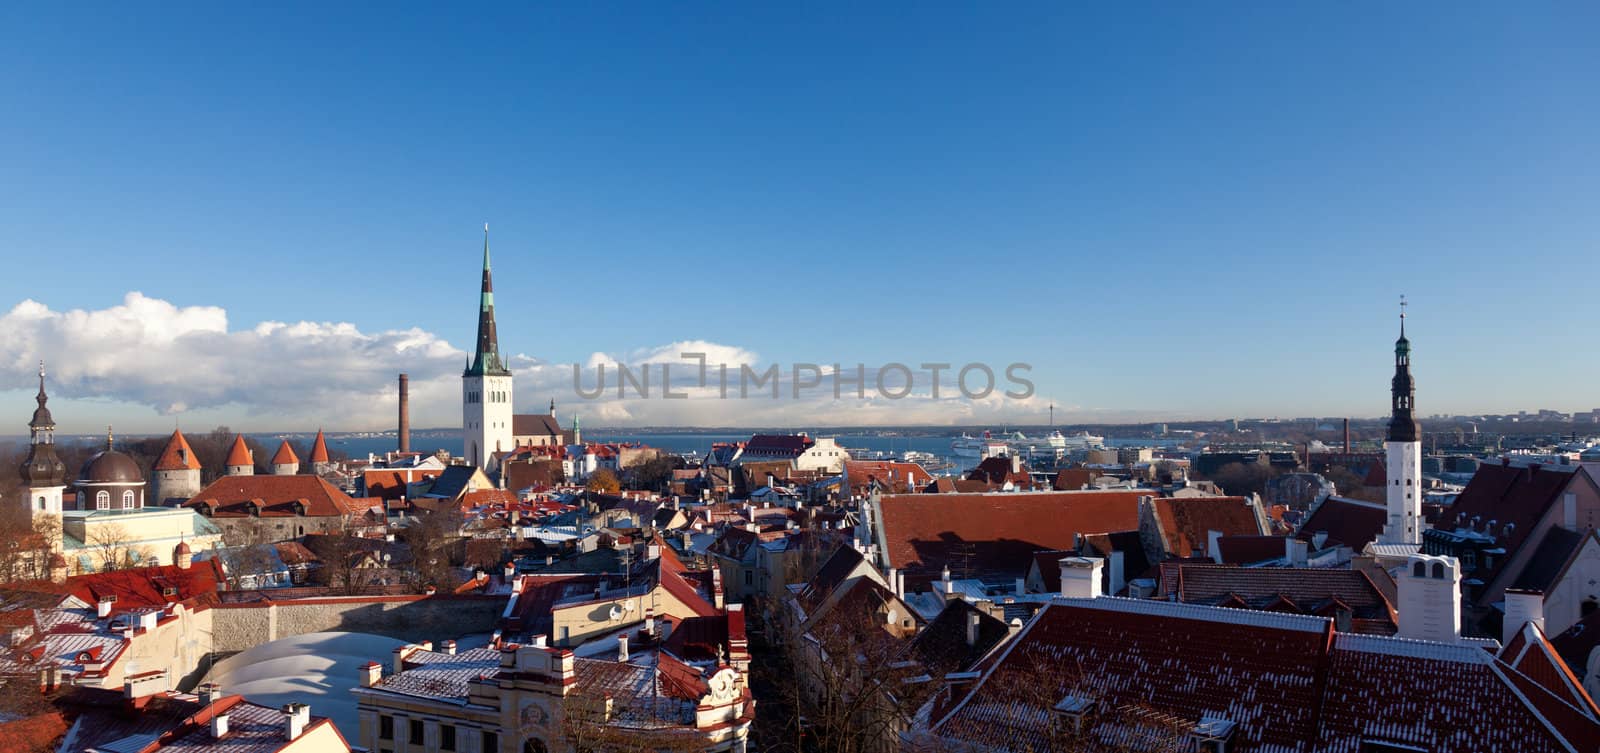 Old town of Tallinn by steheap